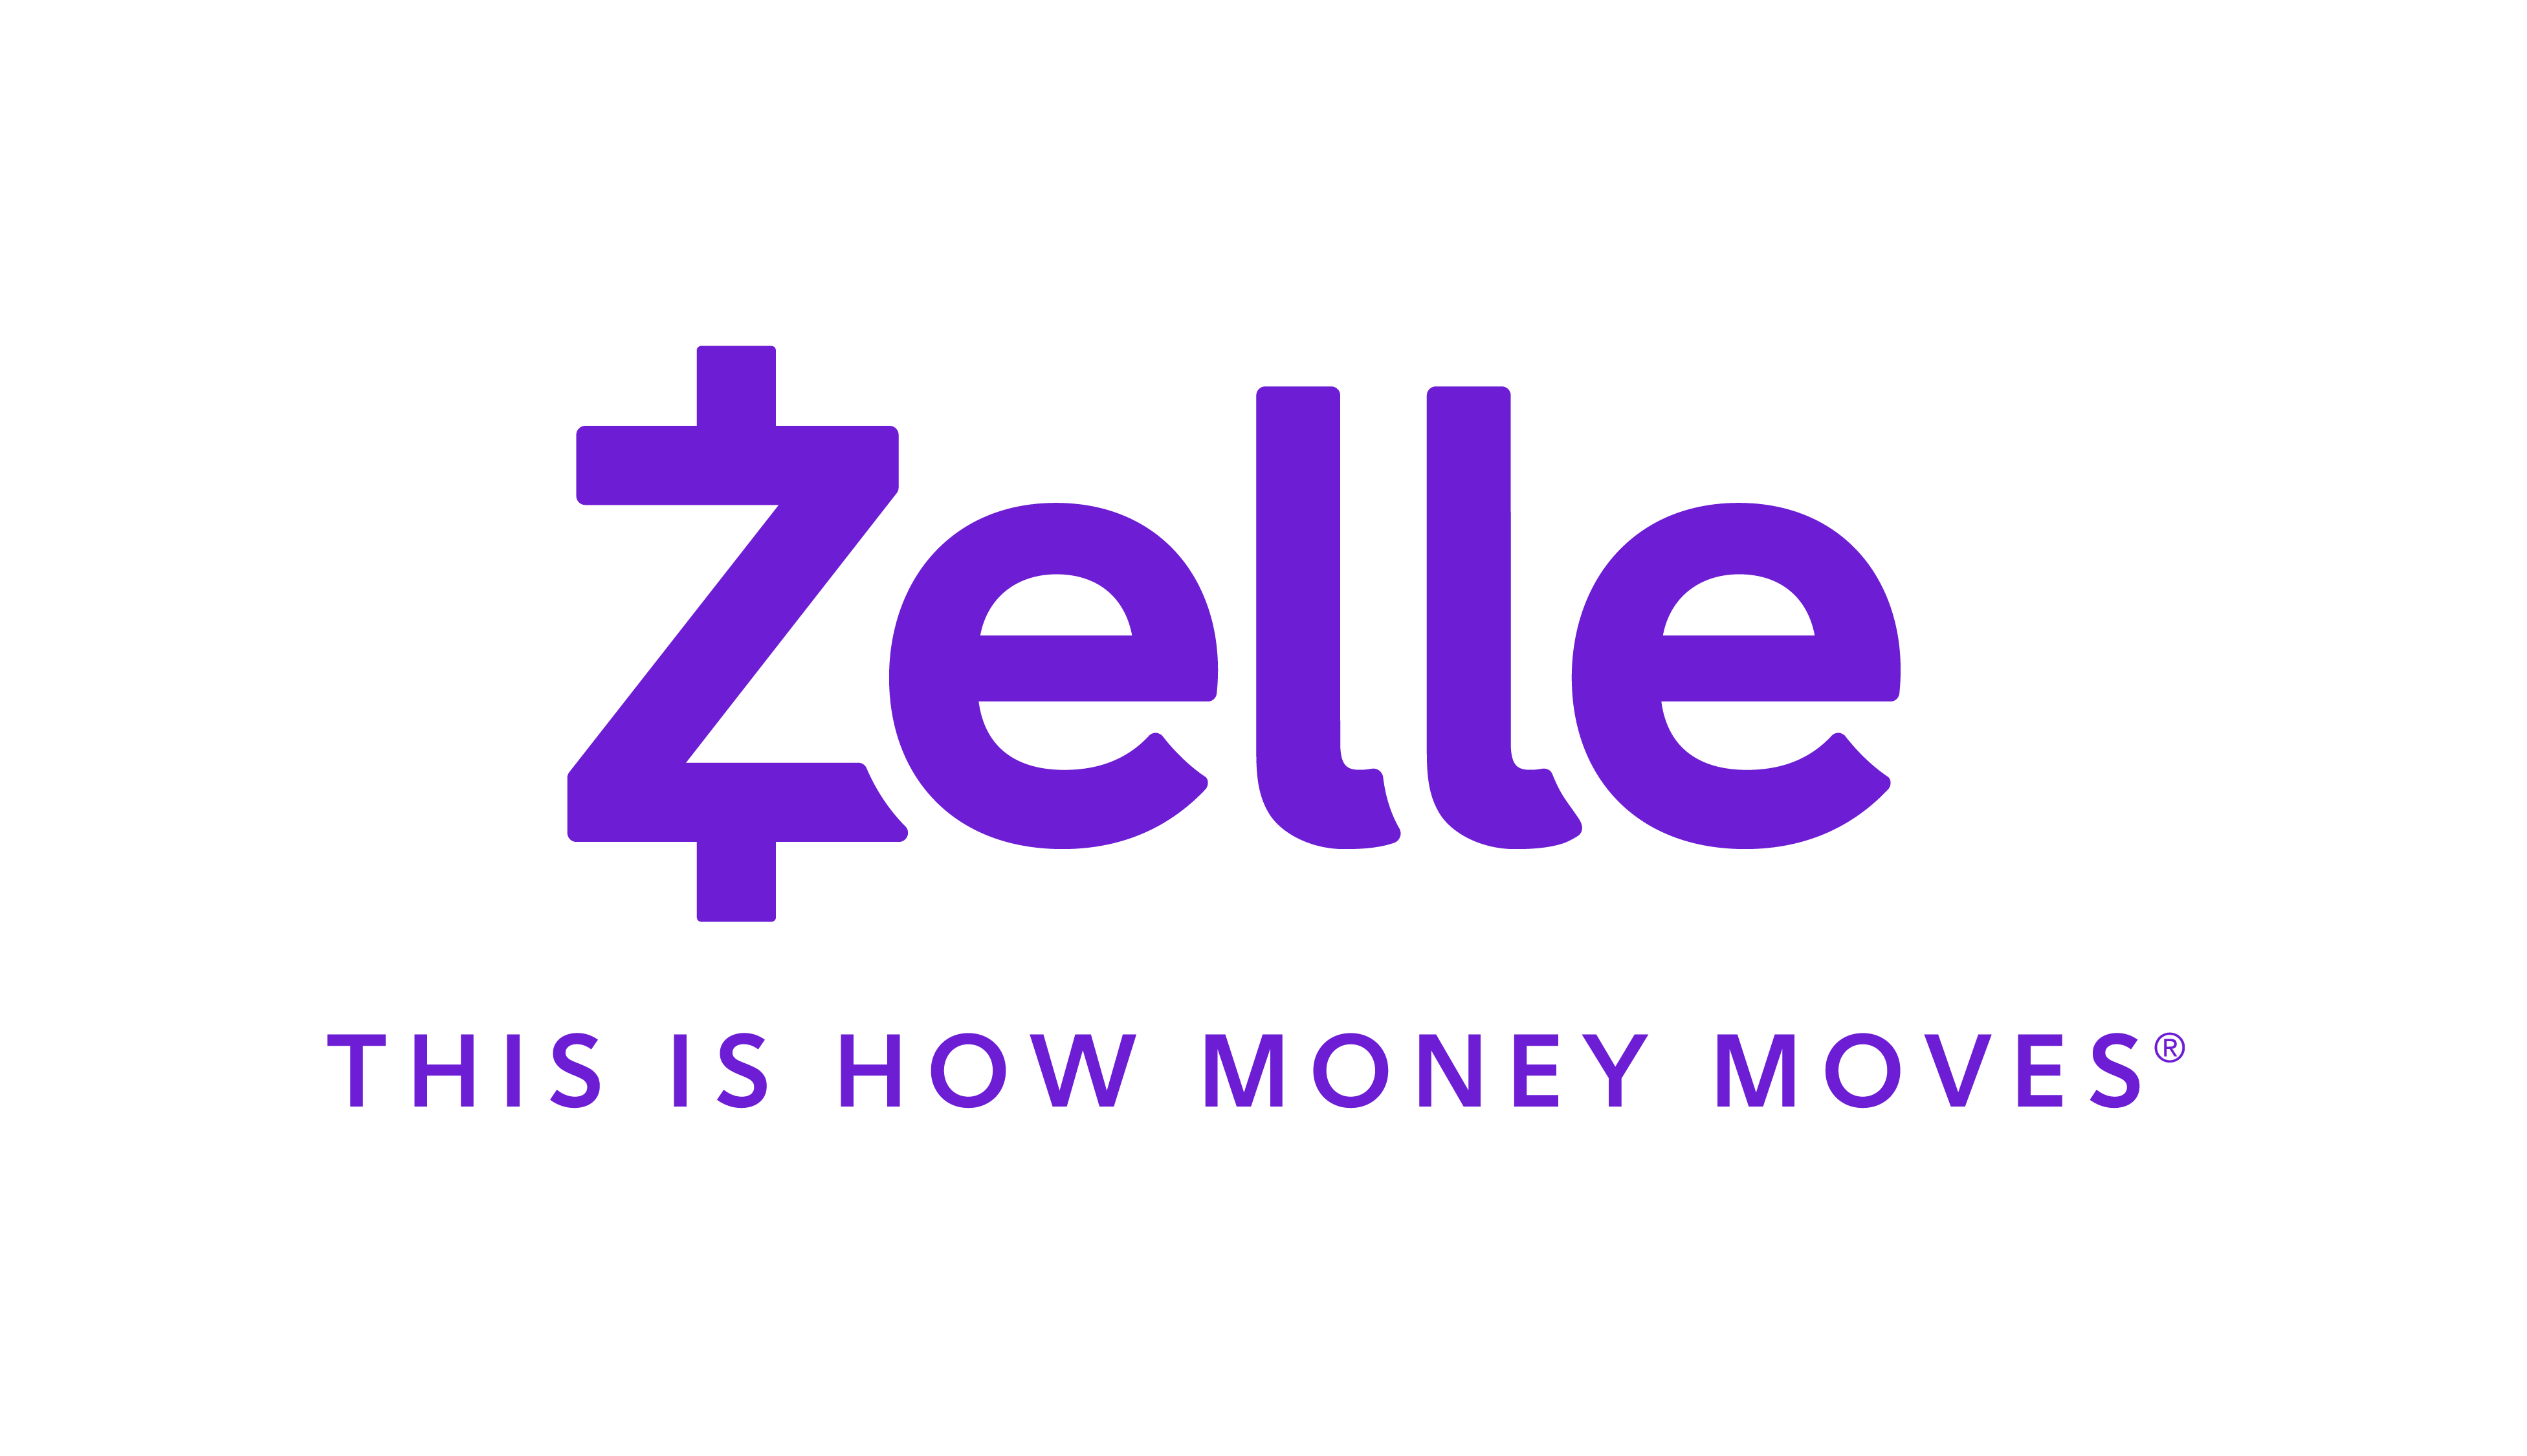 Zelle logo and tagline